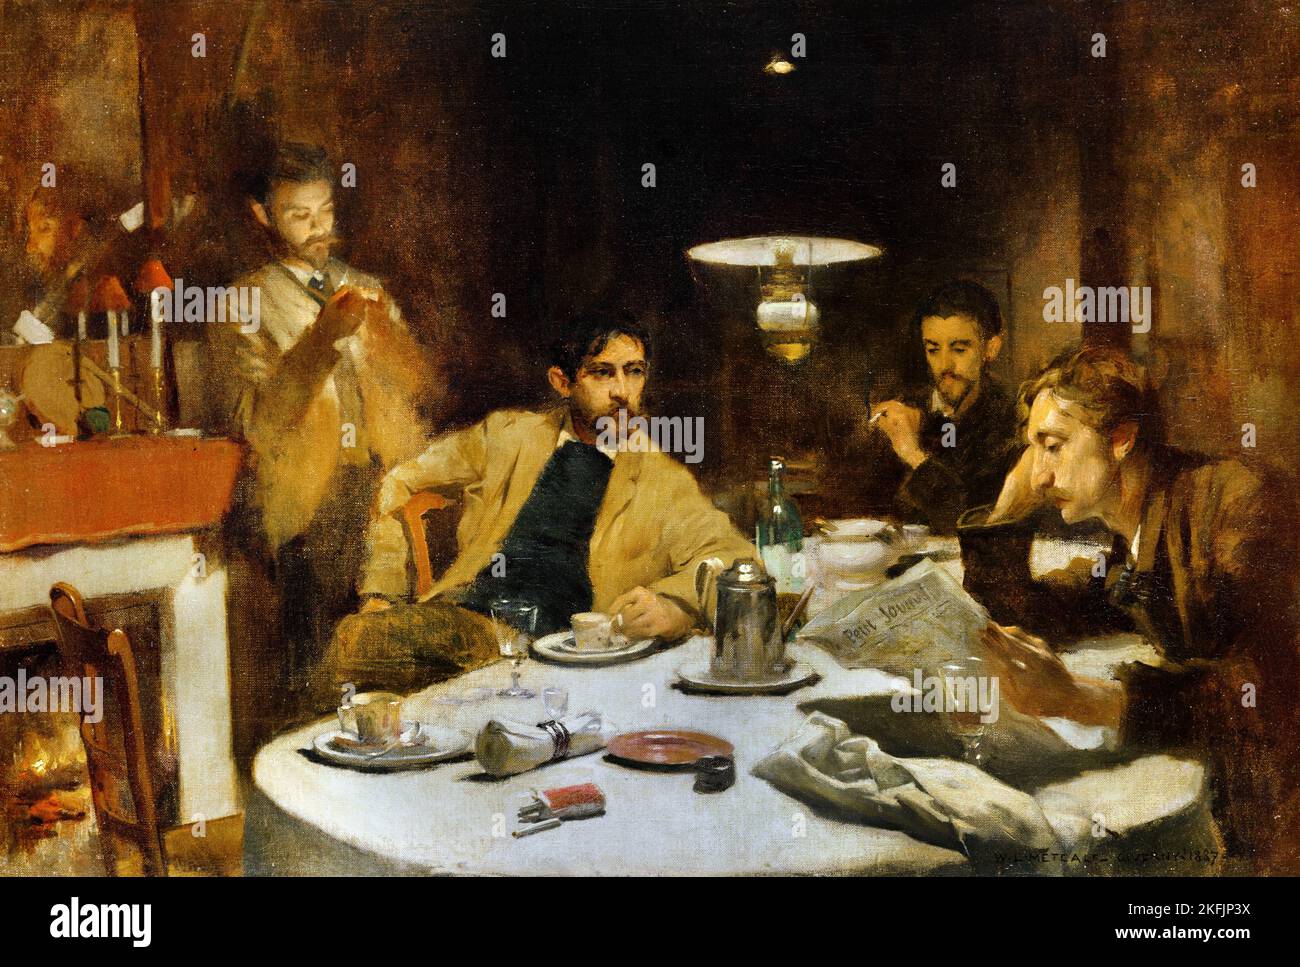 Willard L. Metcalf; The Ten Cent Breakfast; 1887; Oil on canvas; Denver Art Museum, USA. Stock Photo